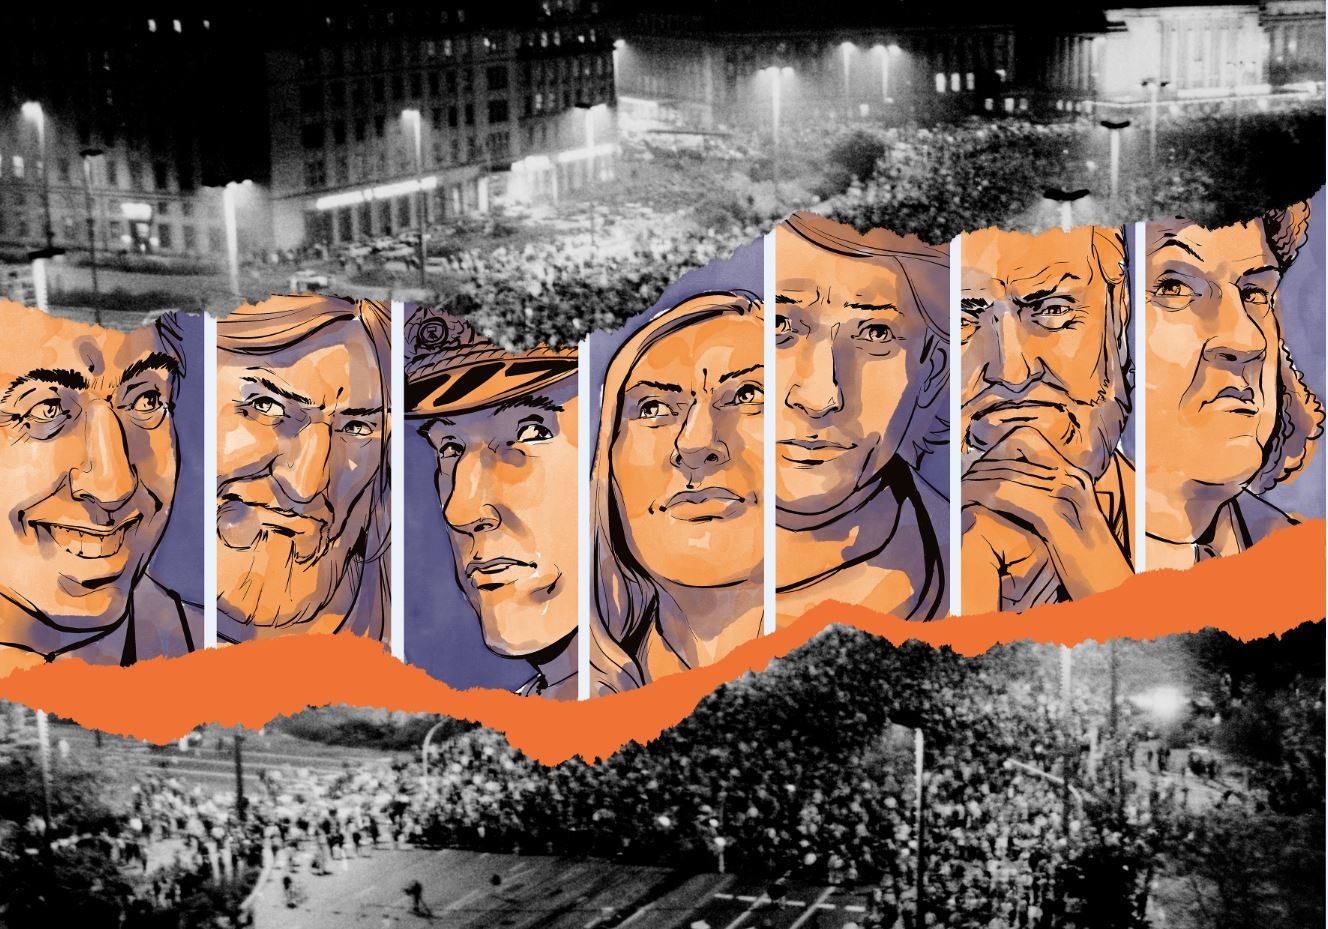 Abgebildet ist das Key Visual für das Spiel "Leipzig ´89 - Revolution reloaded" mit den sieben Spielfiguren.